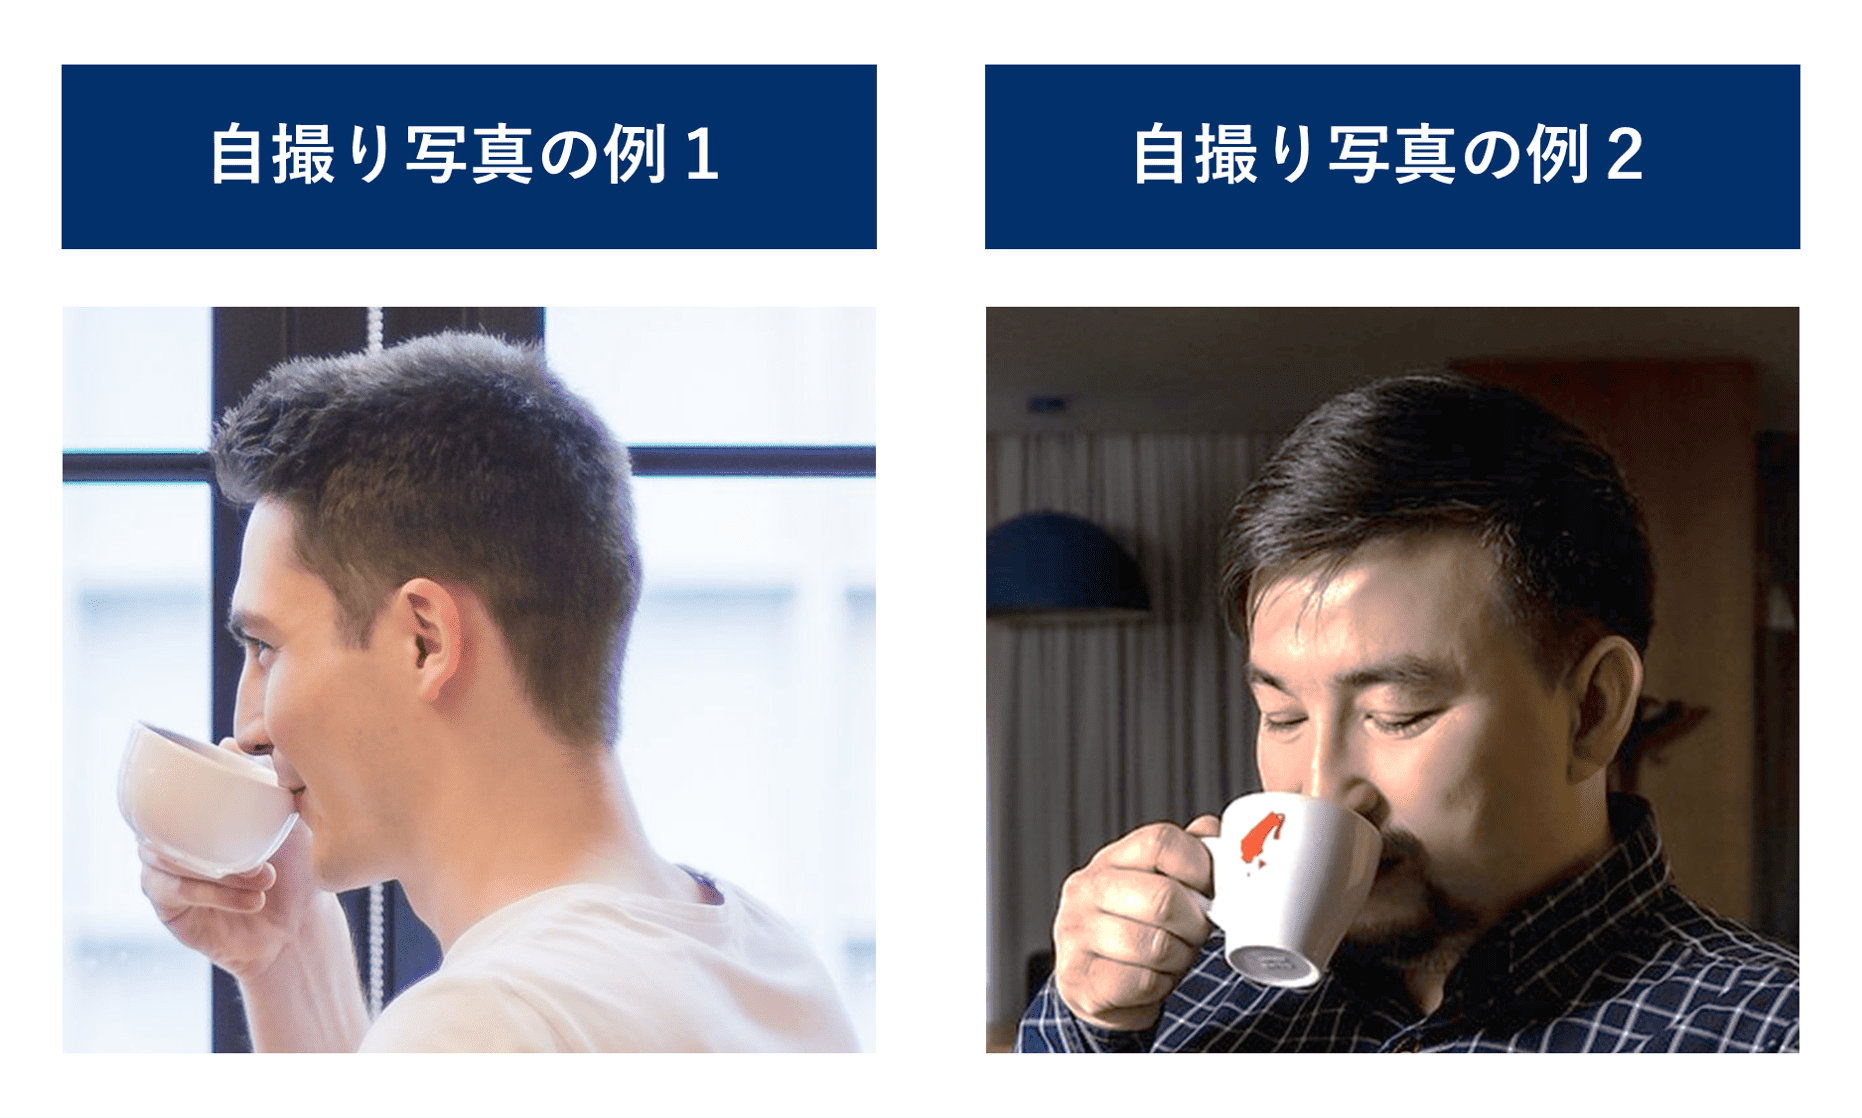 カフェでカップを片手にコーヒーを飲んでいるところを自撮りした写真の二つの例